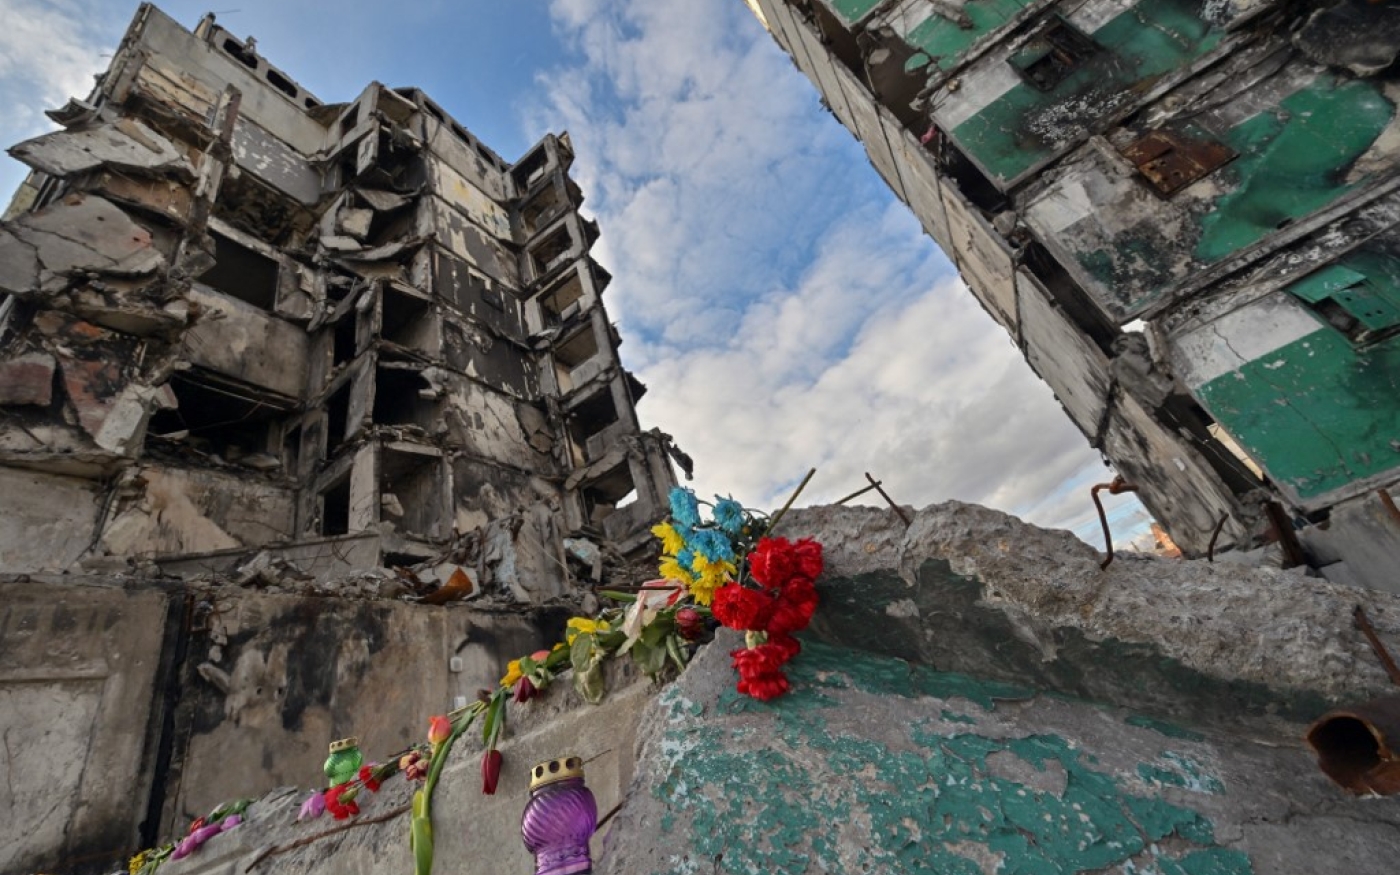 Des fleurs et des bougies ont été posées sur les décombres d’un immeuble détruit par des frappes demissiles russes, dans la région de Kyiv, le 6 mars 2023 (AFP/Sergei Supinsky)